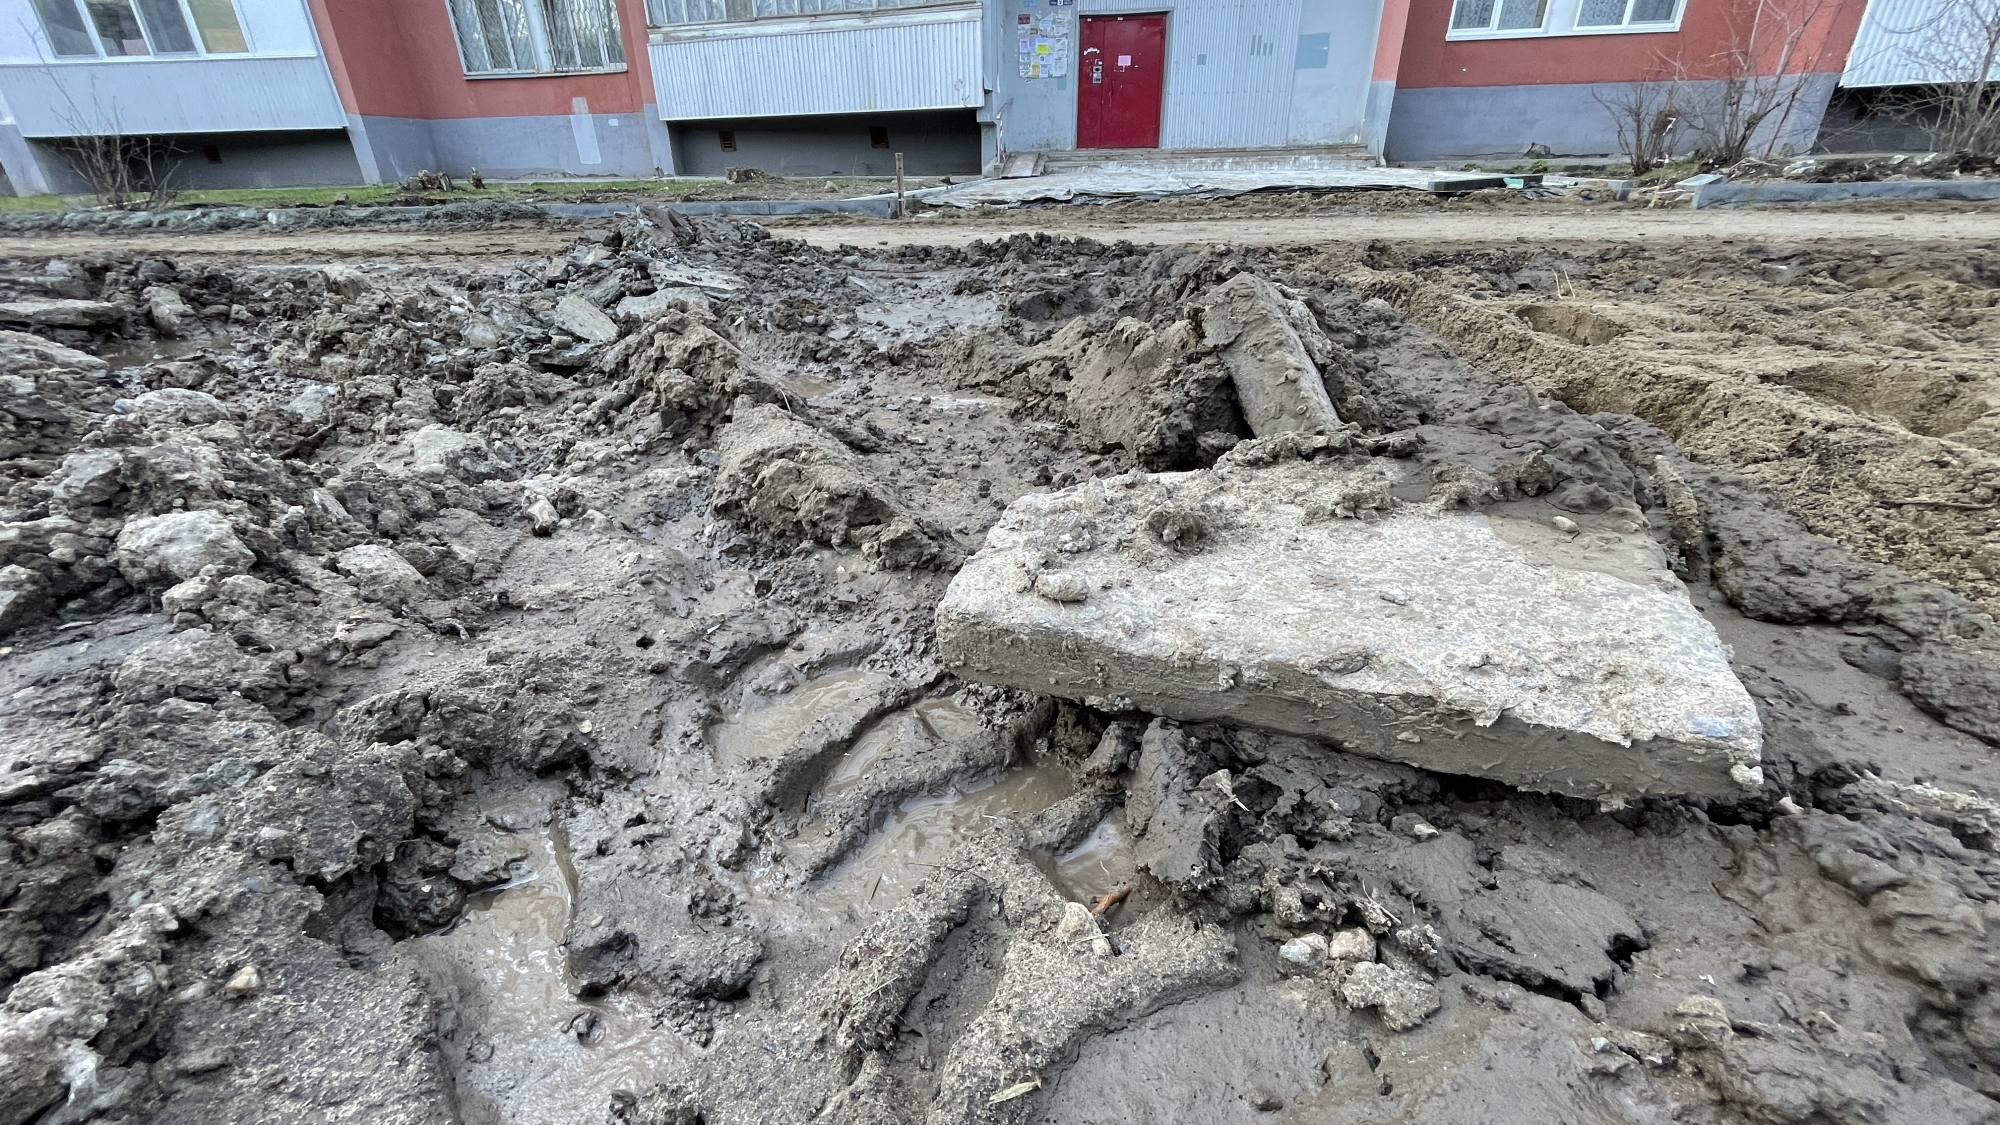 «Развели грязь!» – жители недовольны тем, как стартовали работы по «Нашему двору»   